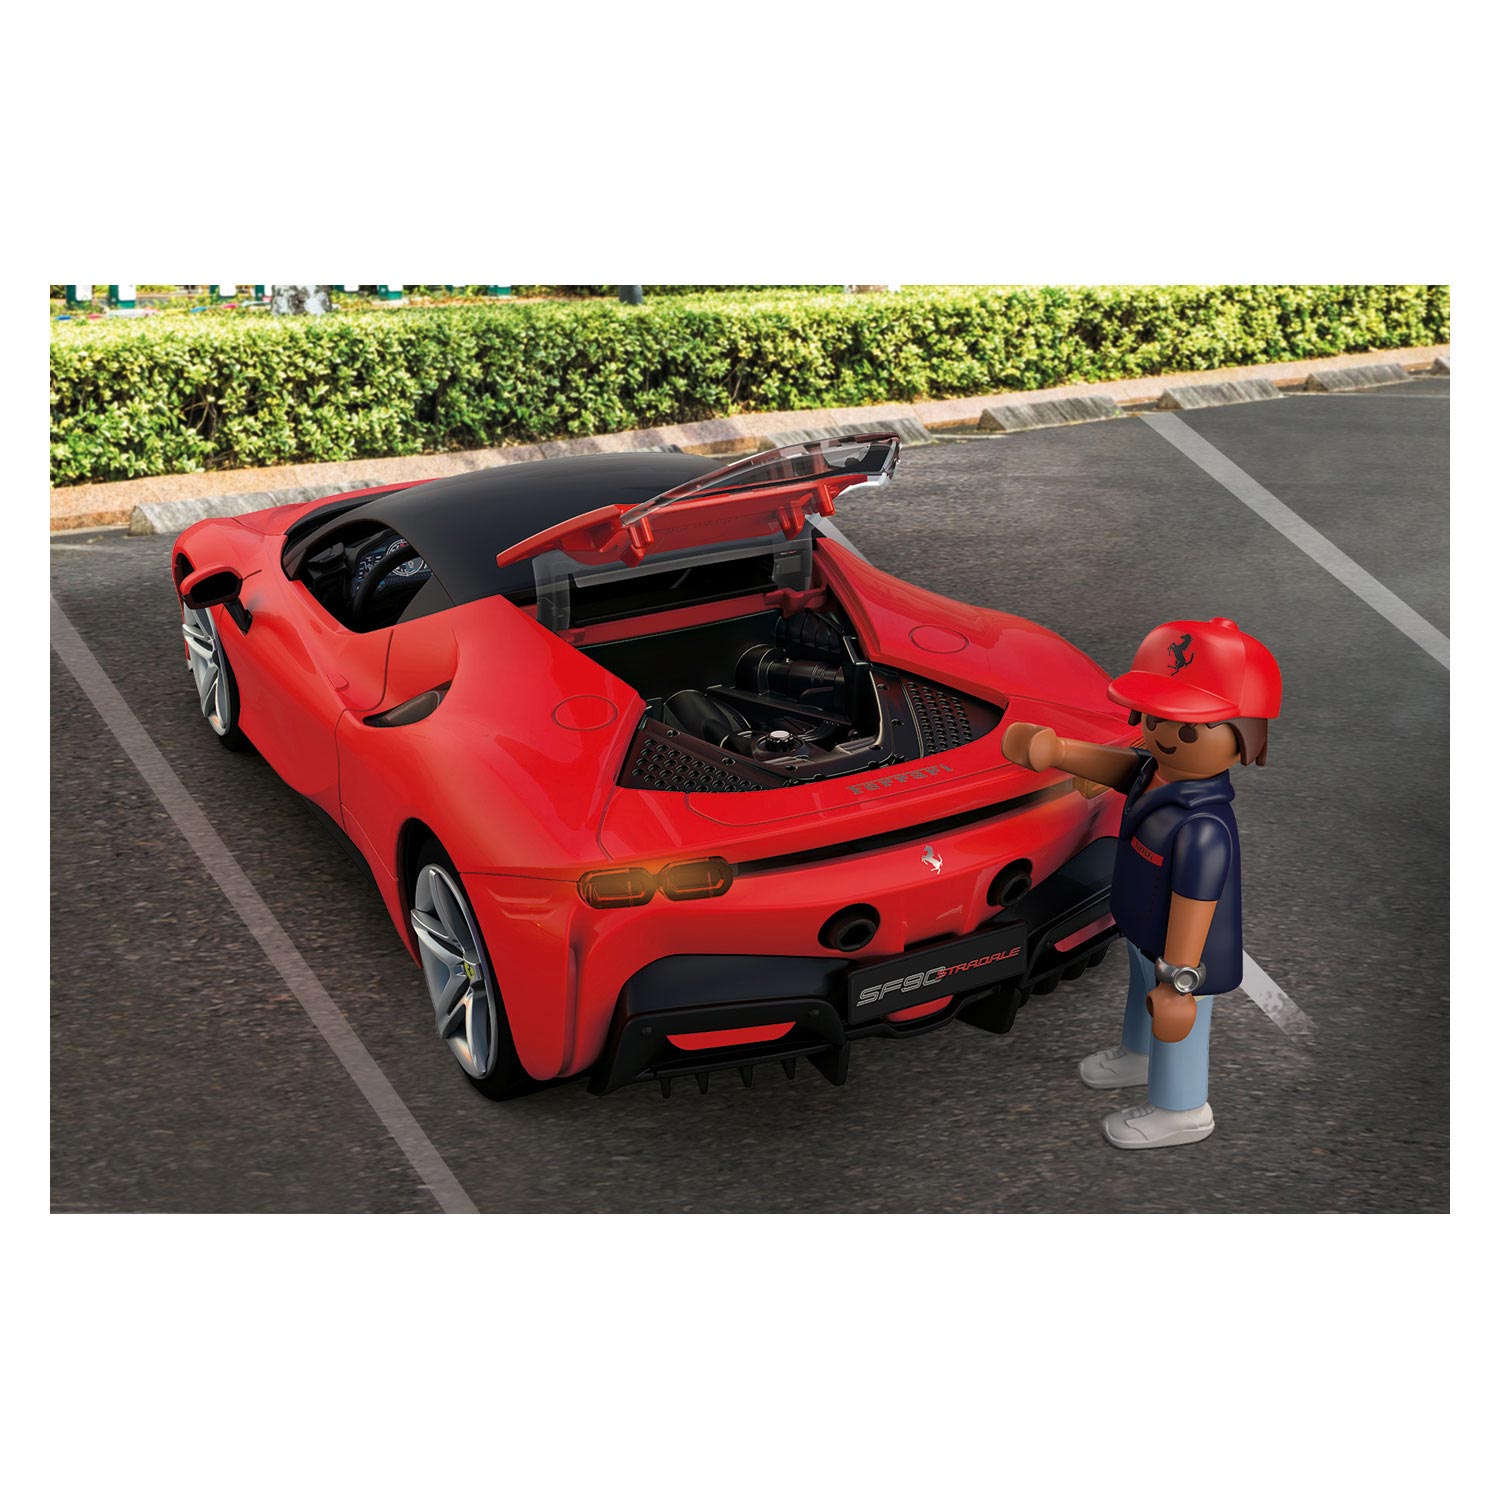 PLAYMOBIL 71020 Modern bil Ferrari SF90 Stradale, superbil, samlarobjekt  för bilentusiaster, leksak för samlare och lämpliga för barn i åldern 5+